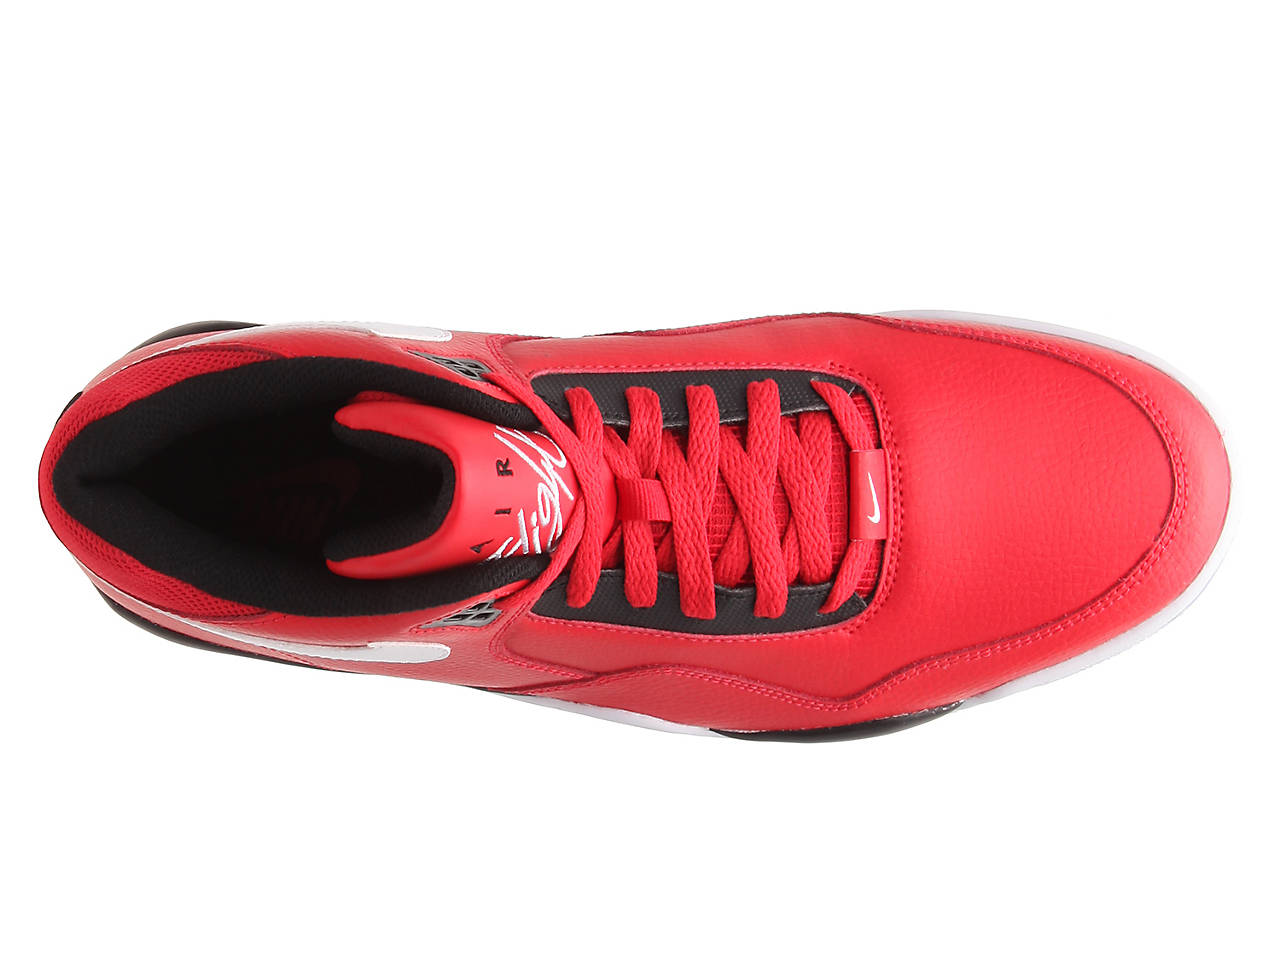 Nike Flight Legacy High-Top Sneaker - Men's Men's Shoes | DSW